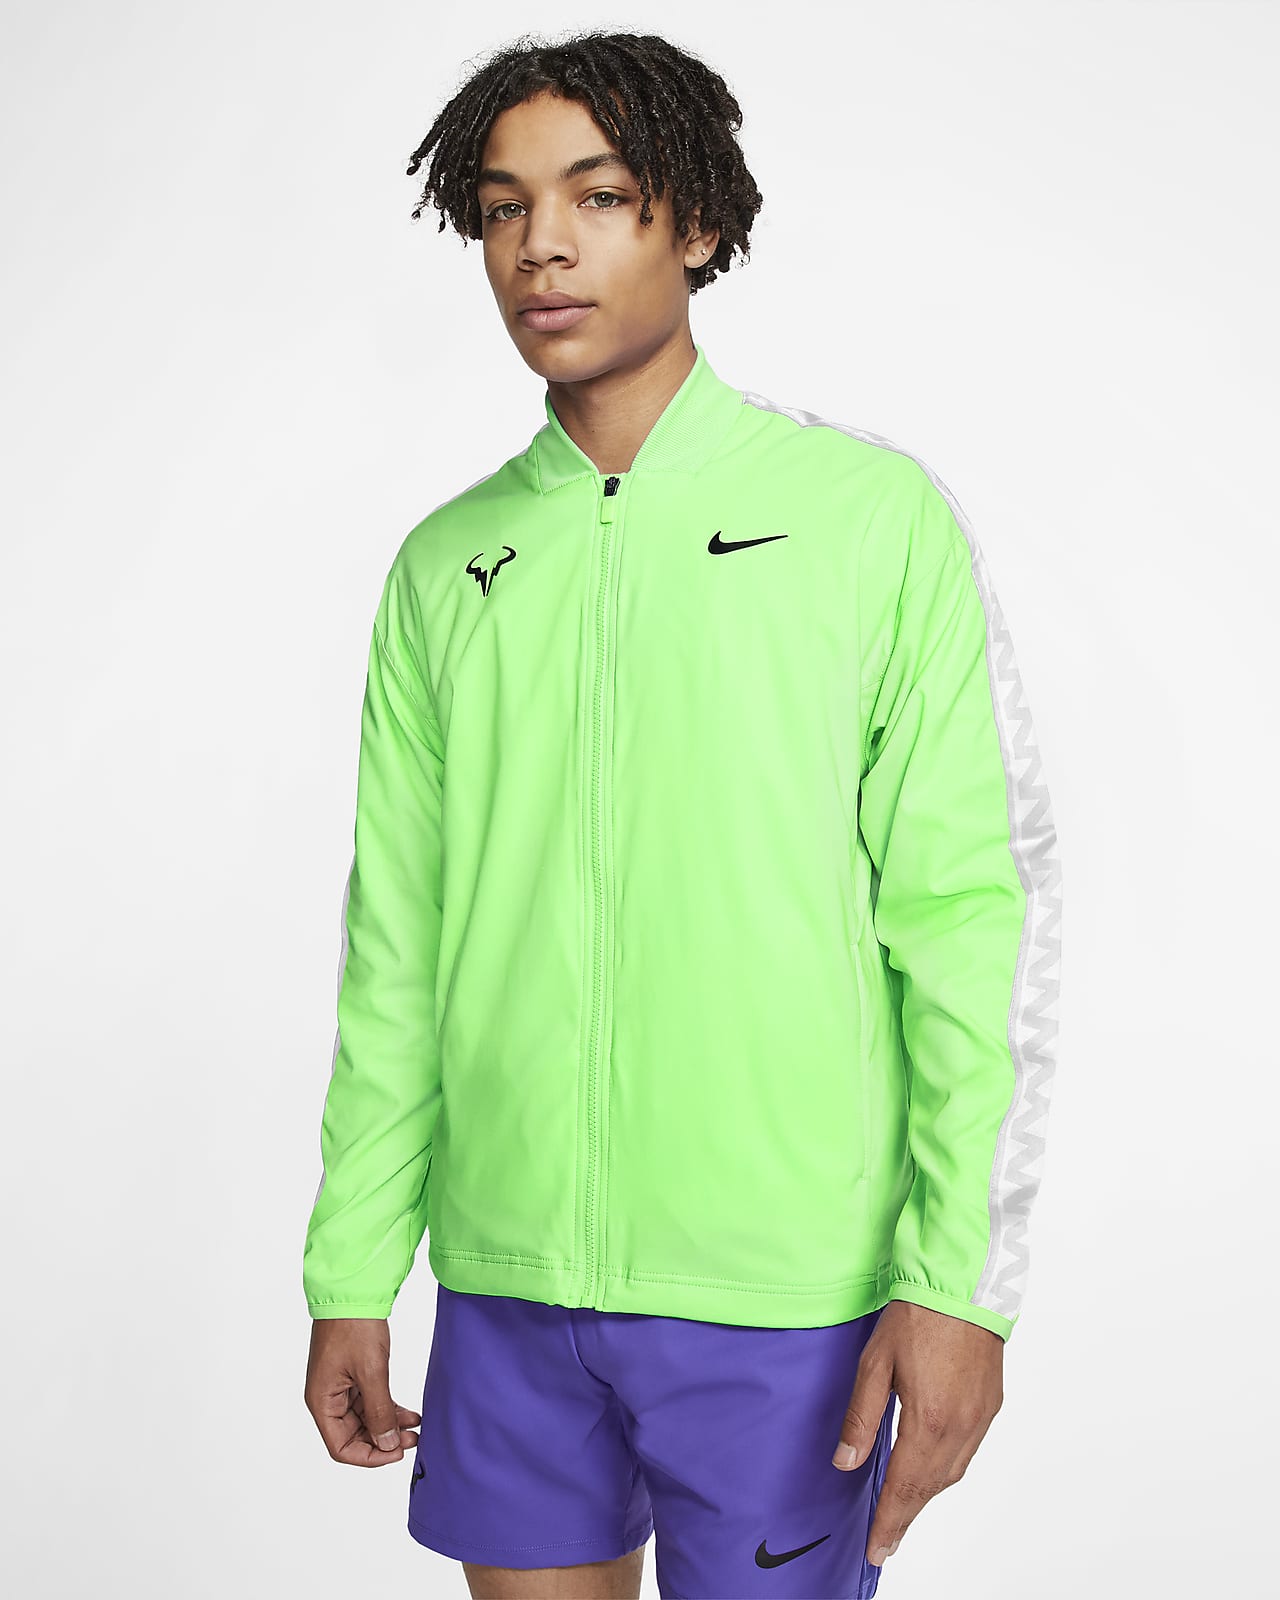 Rafa Men's Tennis Jacket. Nike LU